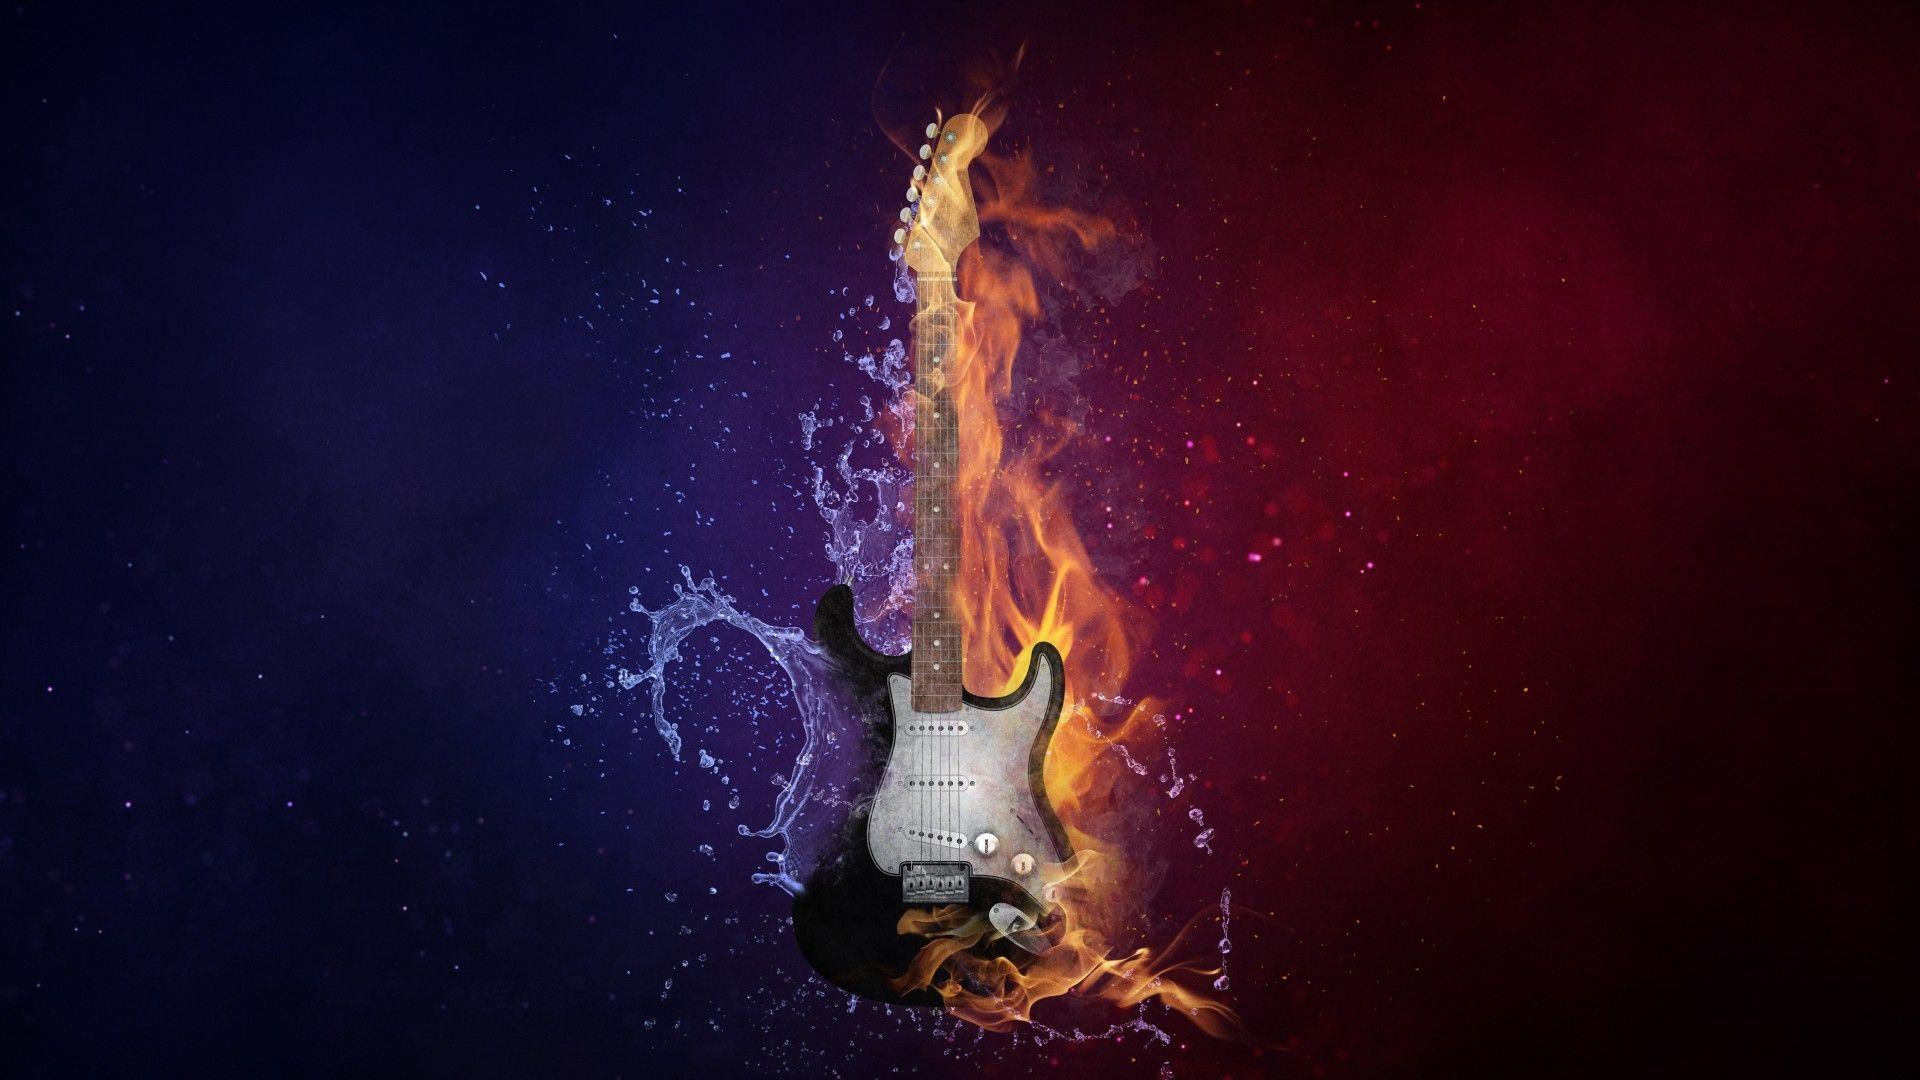 Download 1920x1080 Guitar, Digital Art, Fire, Water, Instrument